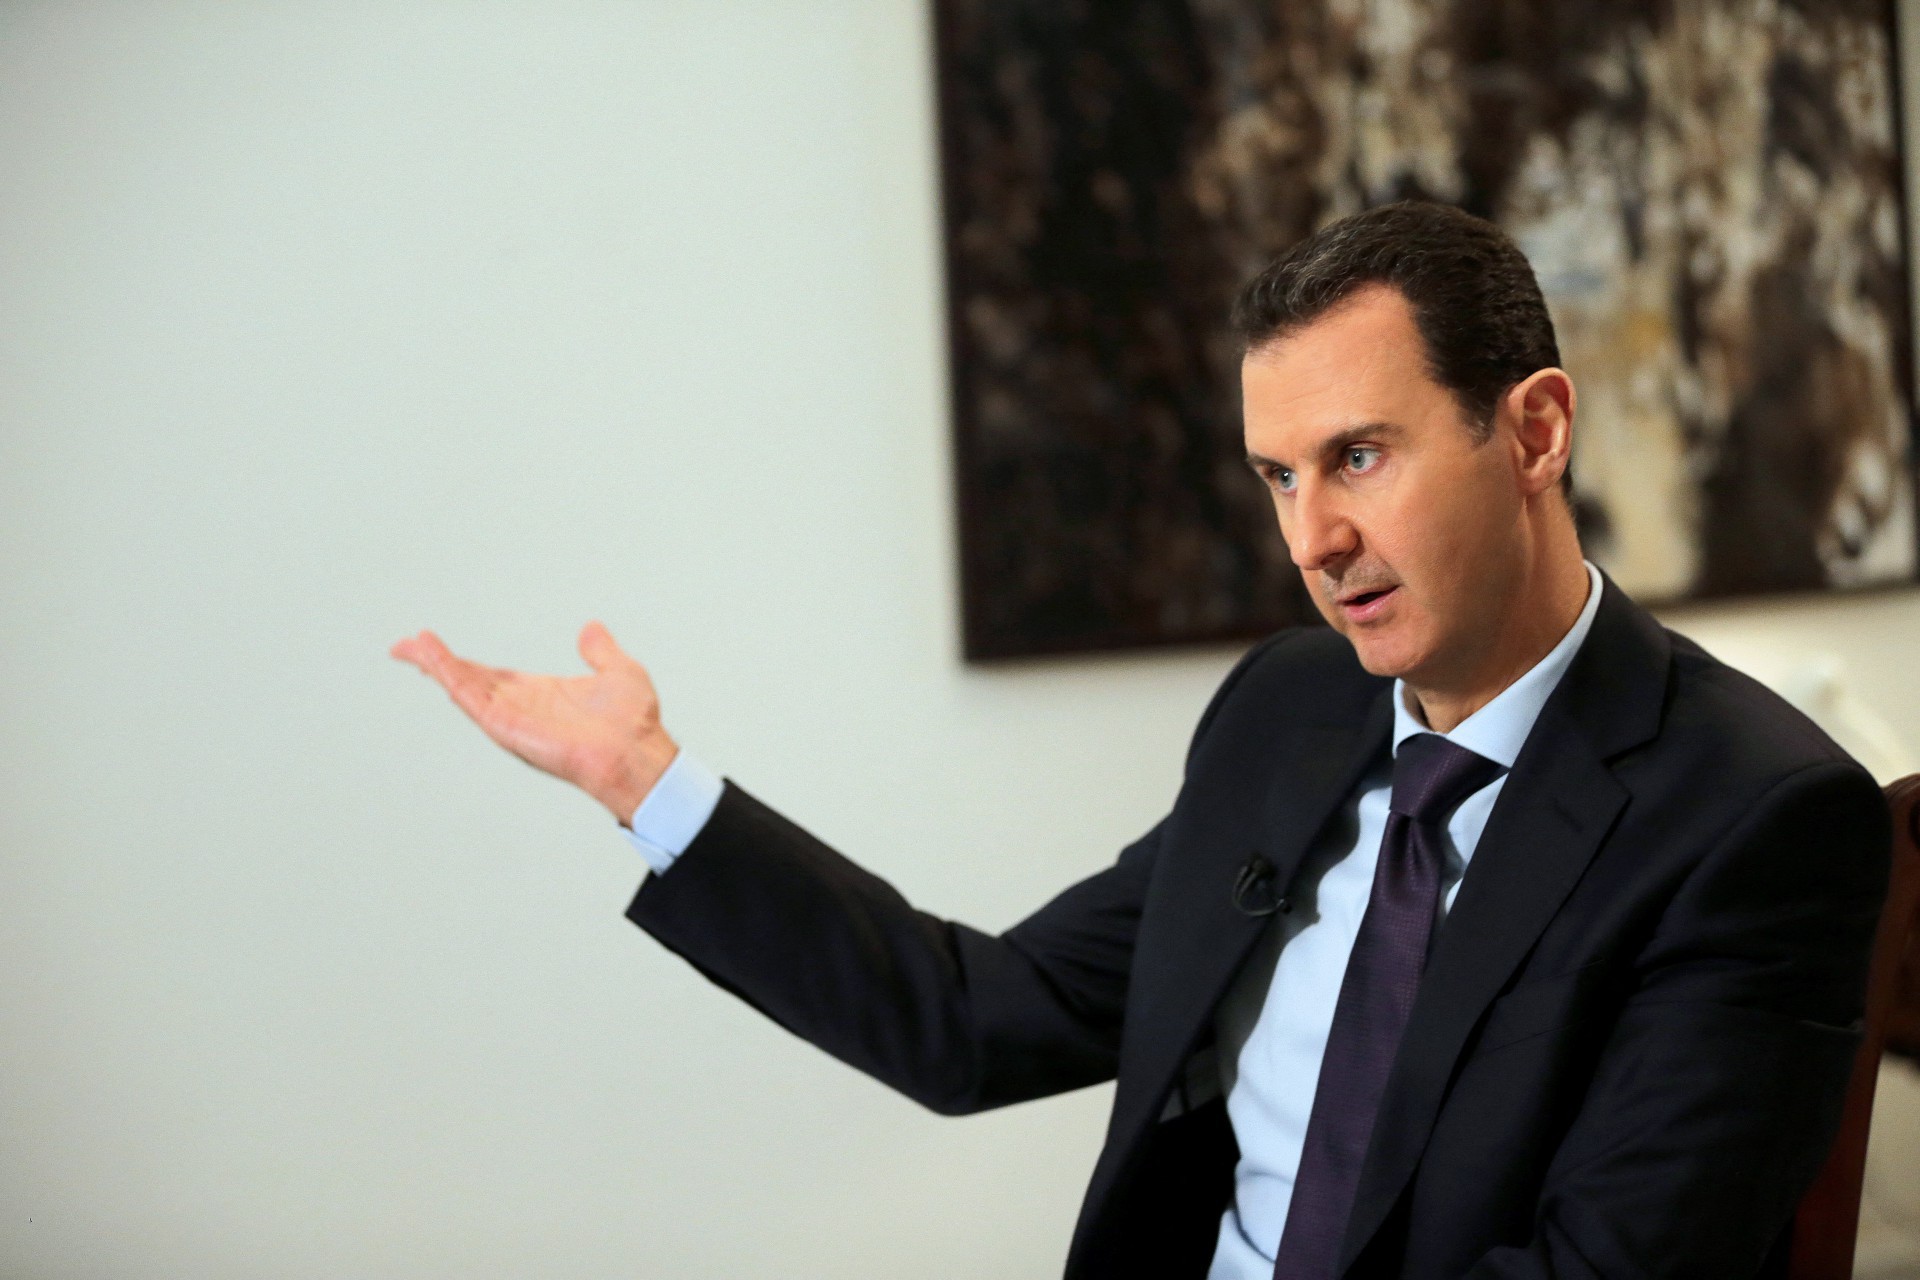 Presidente sírio Bashar al-Assad durante uma entrevista em Damasco, em 2016. Considerado um ditador por parte da população síria, levou o país a uma guerra civil que já dura 10 anos. 